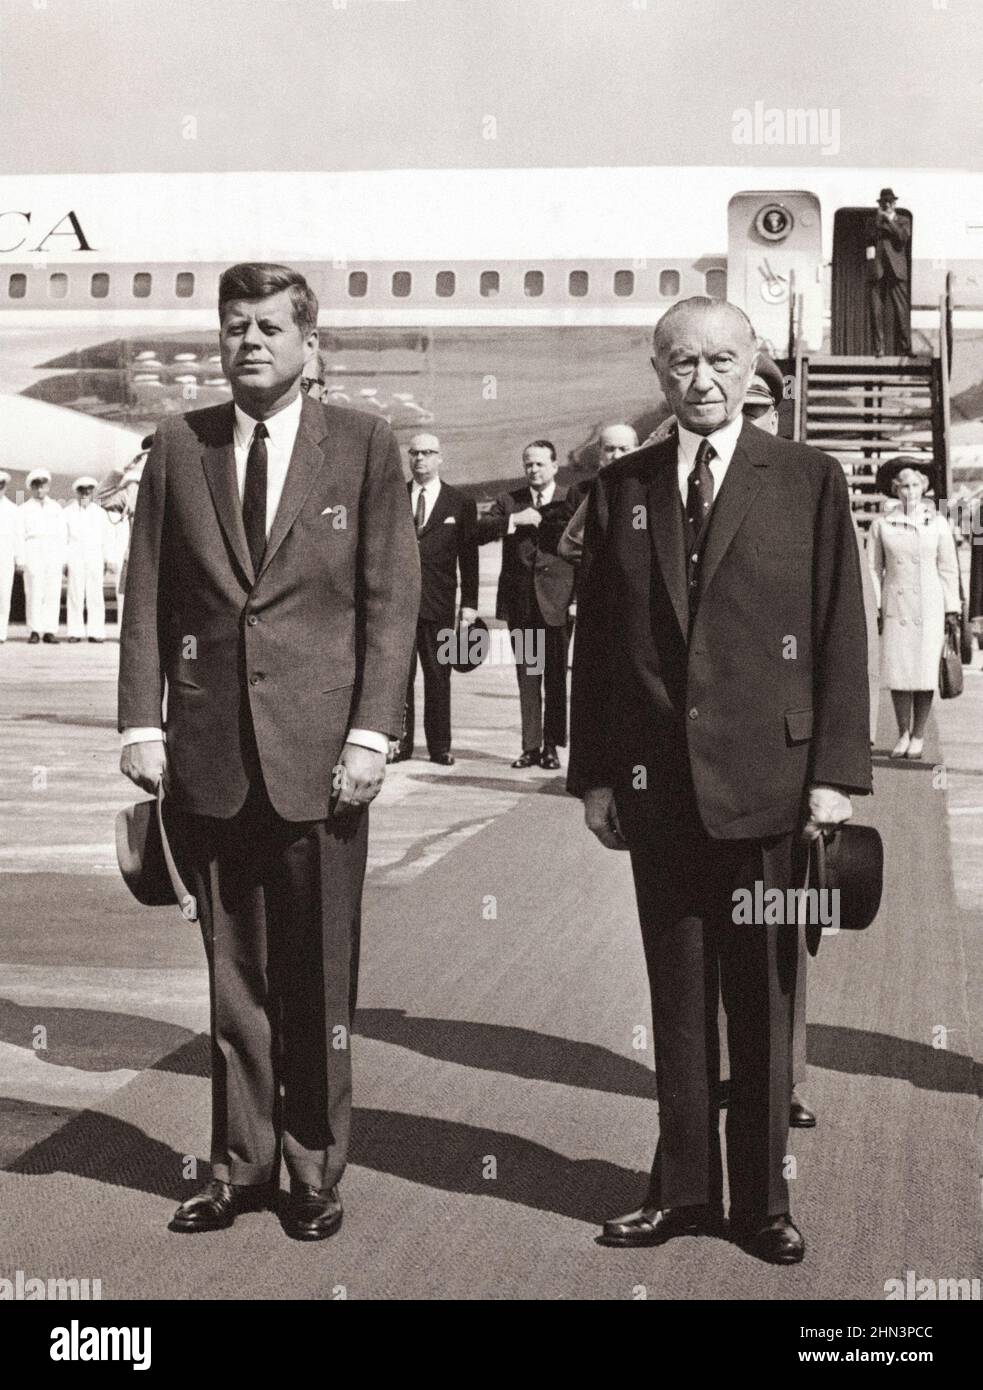 Vintage-Foto der Berliner Krise von 1961: Mauerbau. Präsident Kennedy und Bundeskanzler Adenauer sind während des Spiels der USA aufmerksam Stockfoto